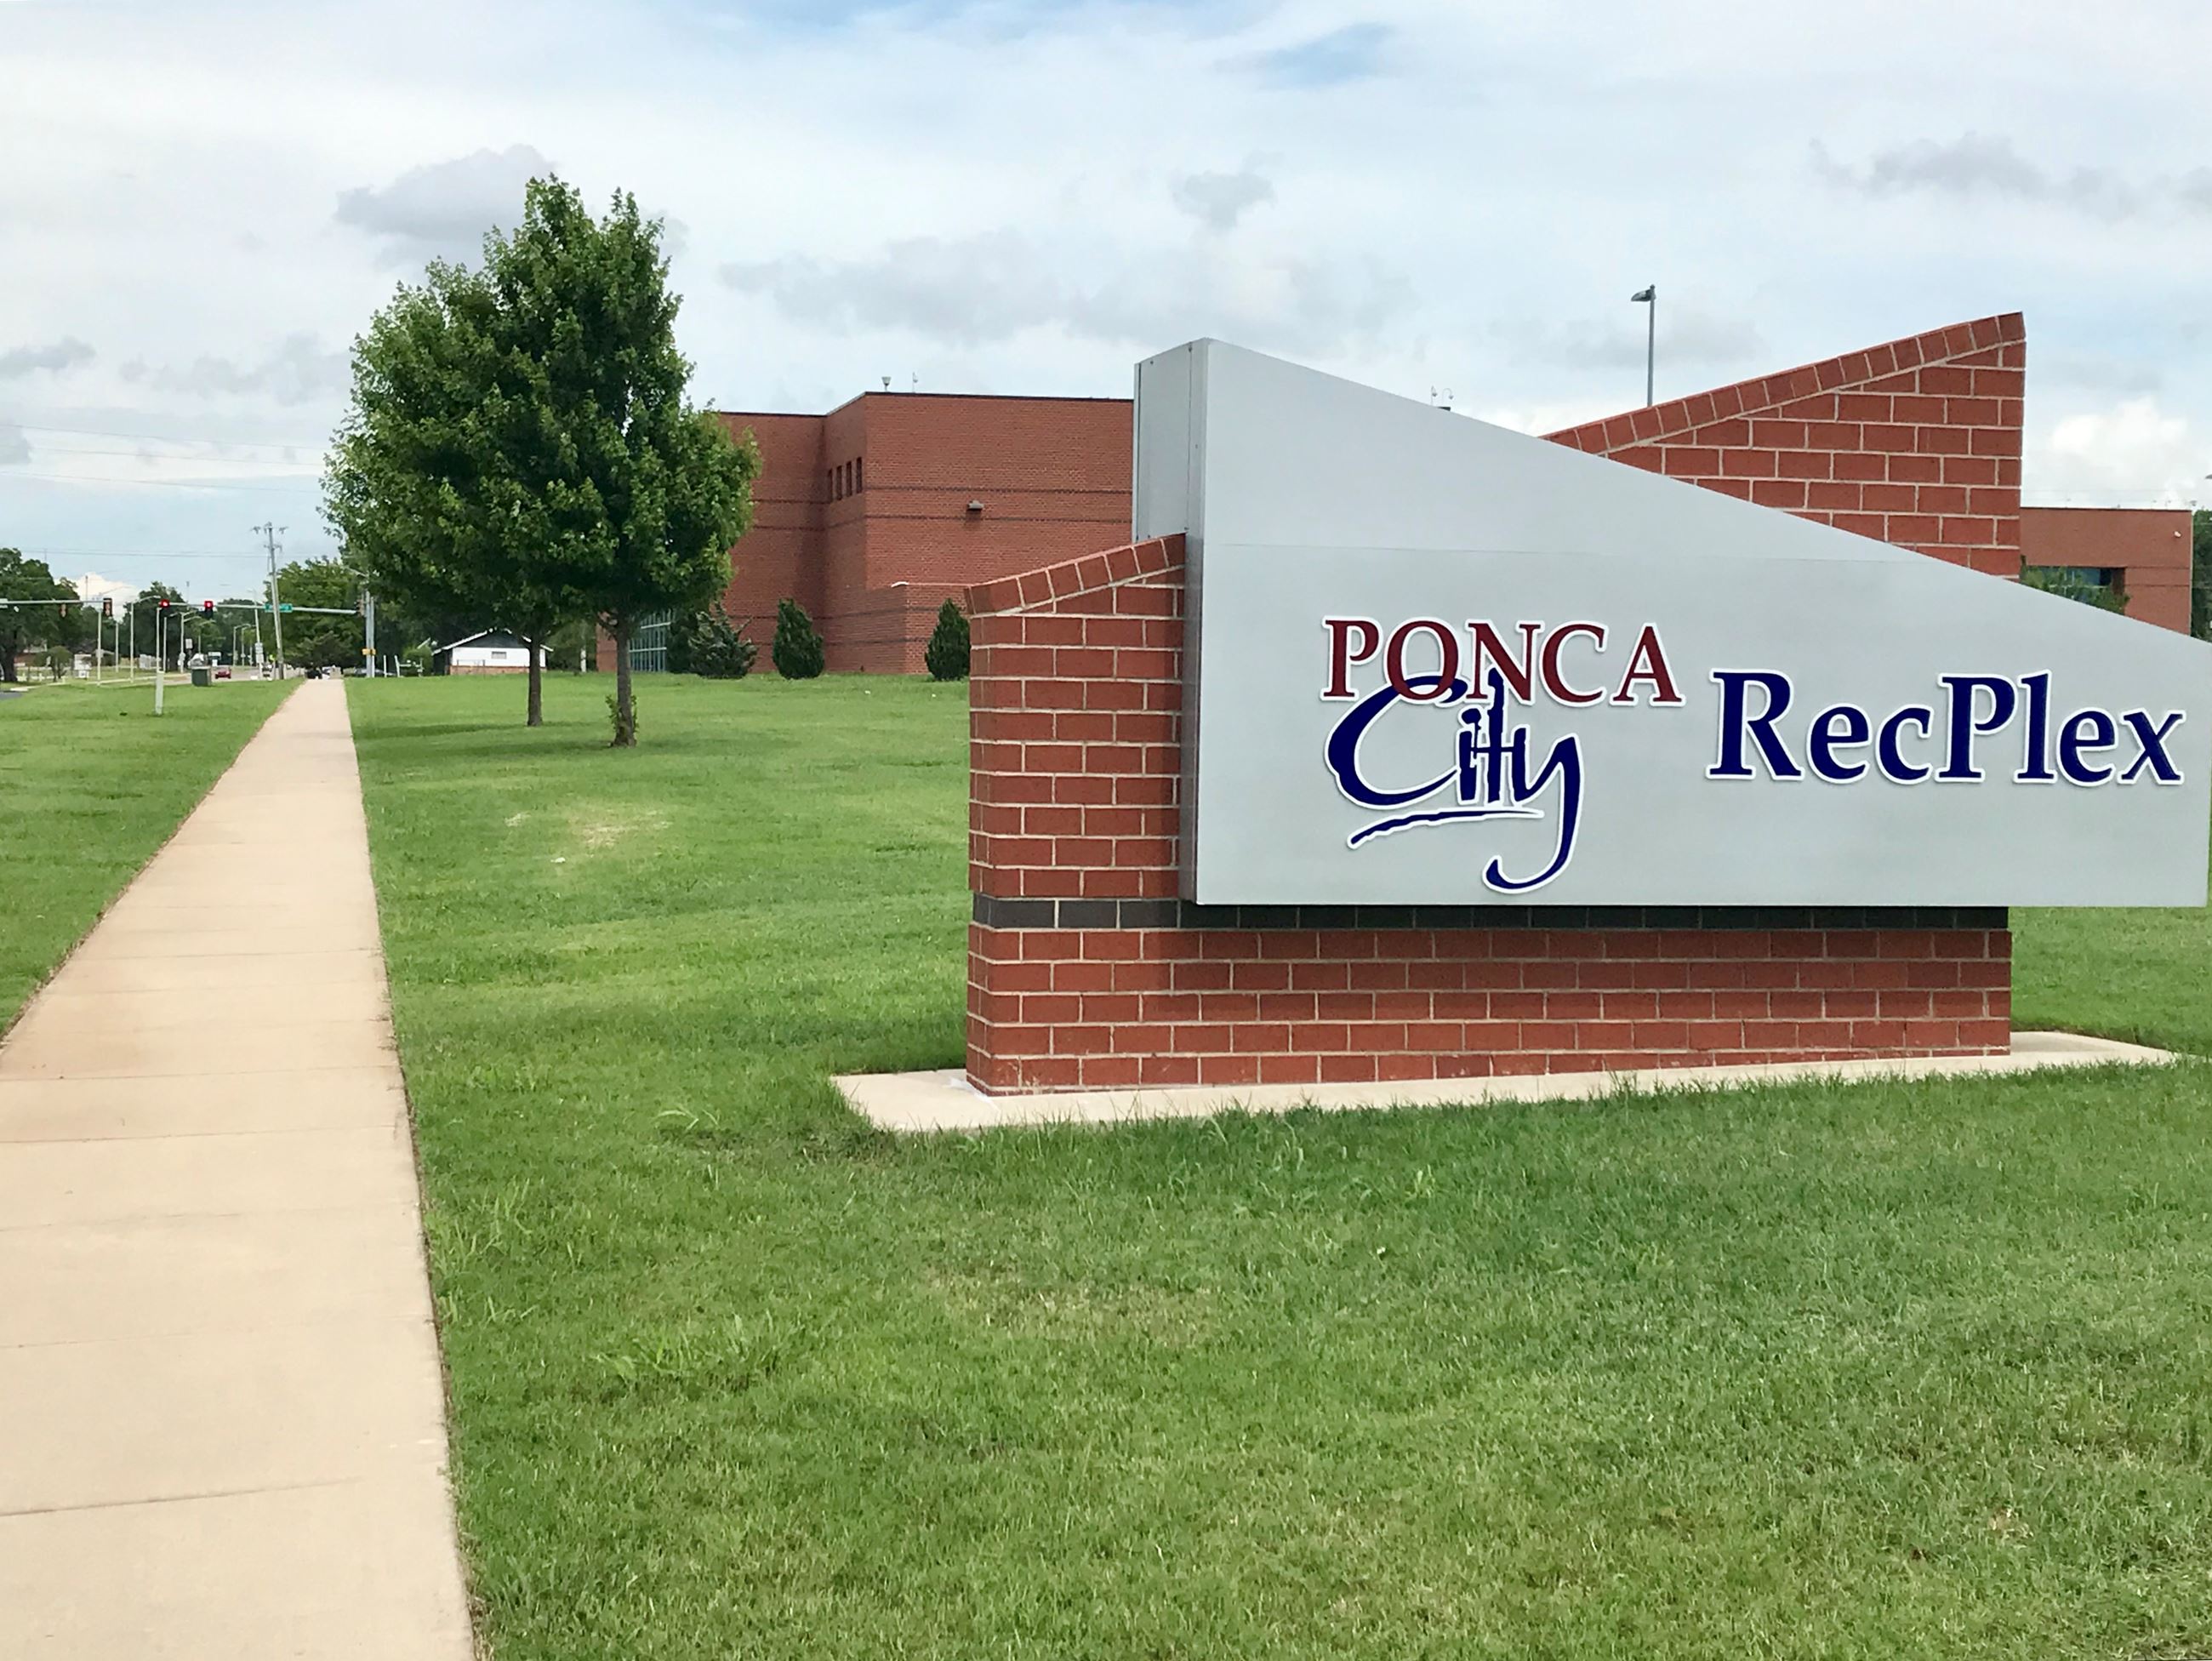 Ponca City RecPlex